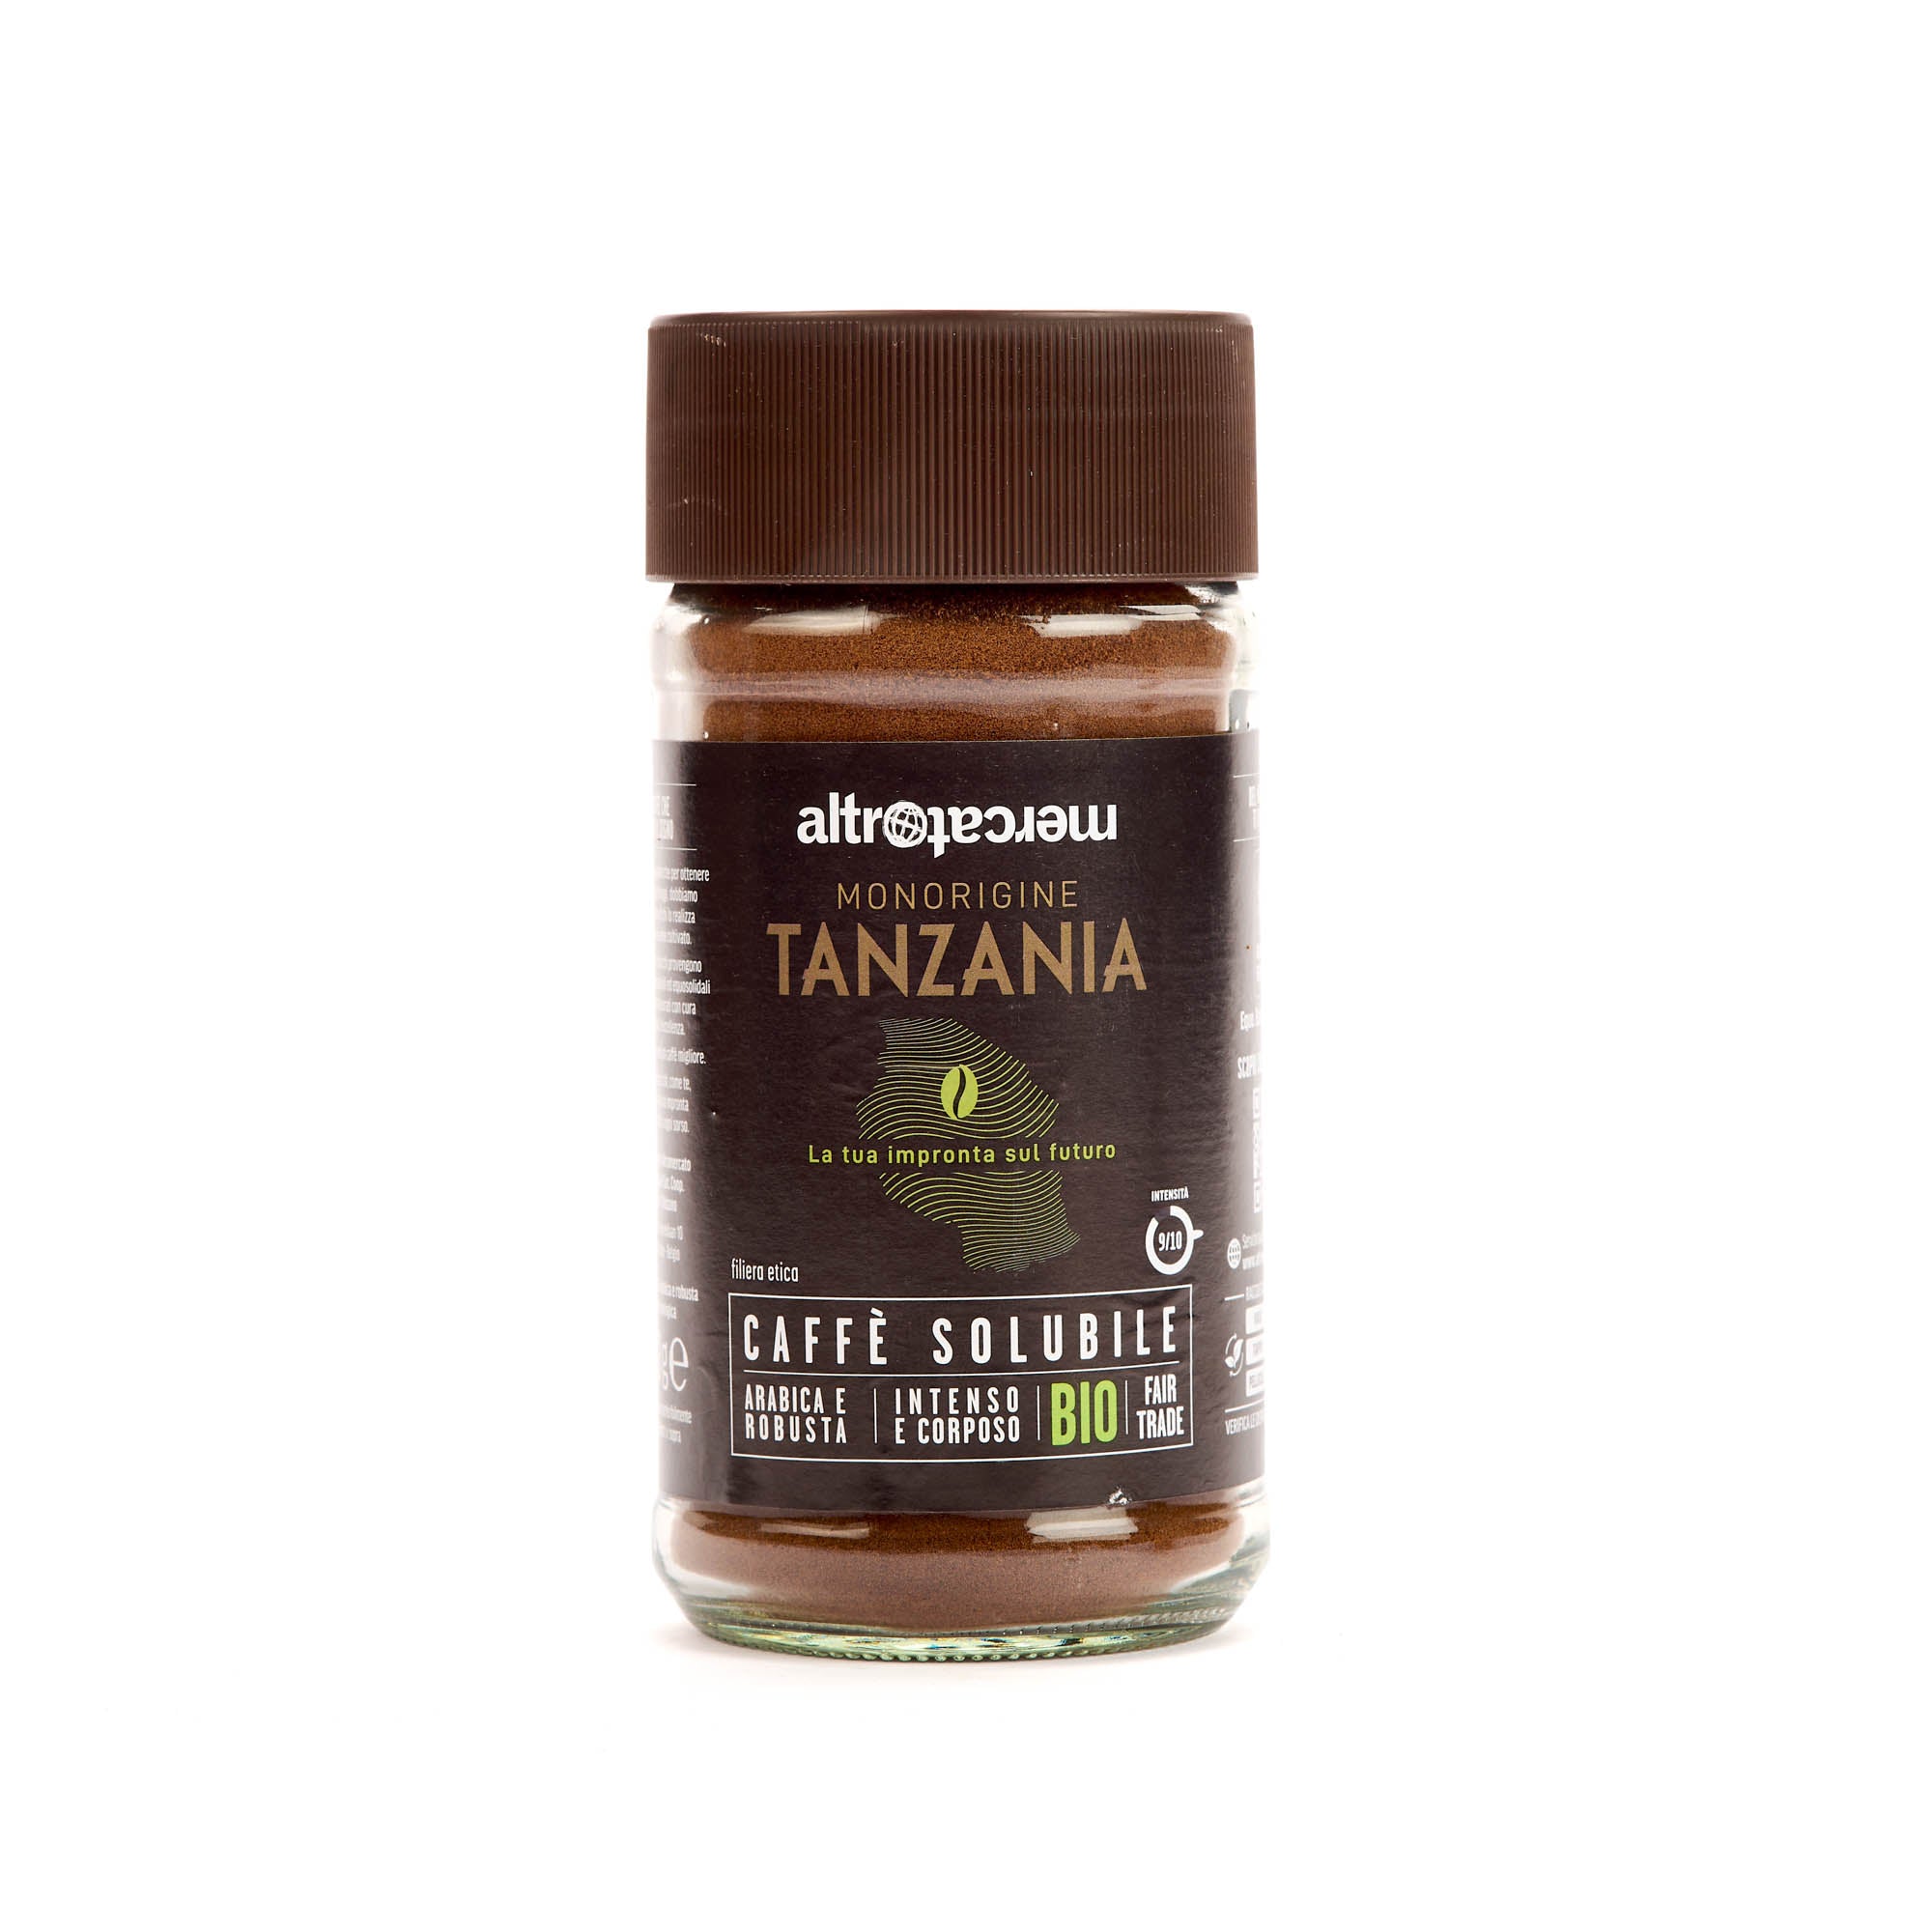 Caffè solubile Monorigine Tanzania - bio - 100g